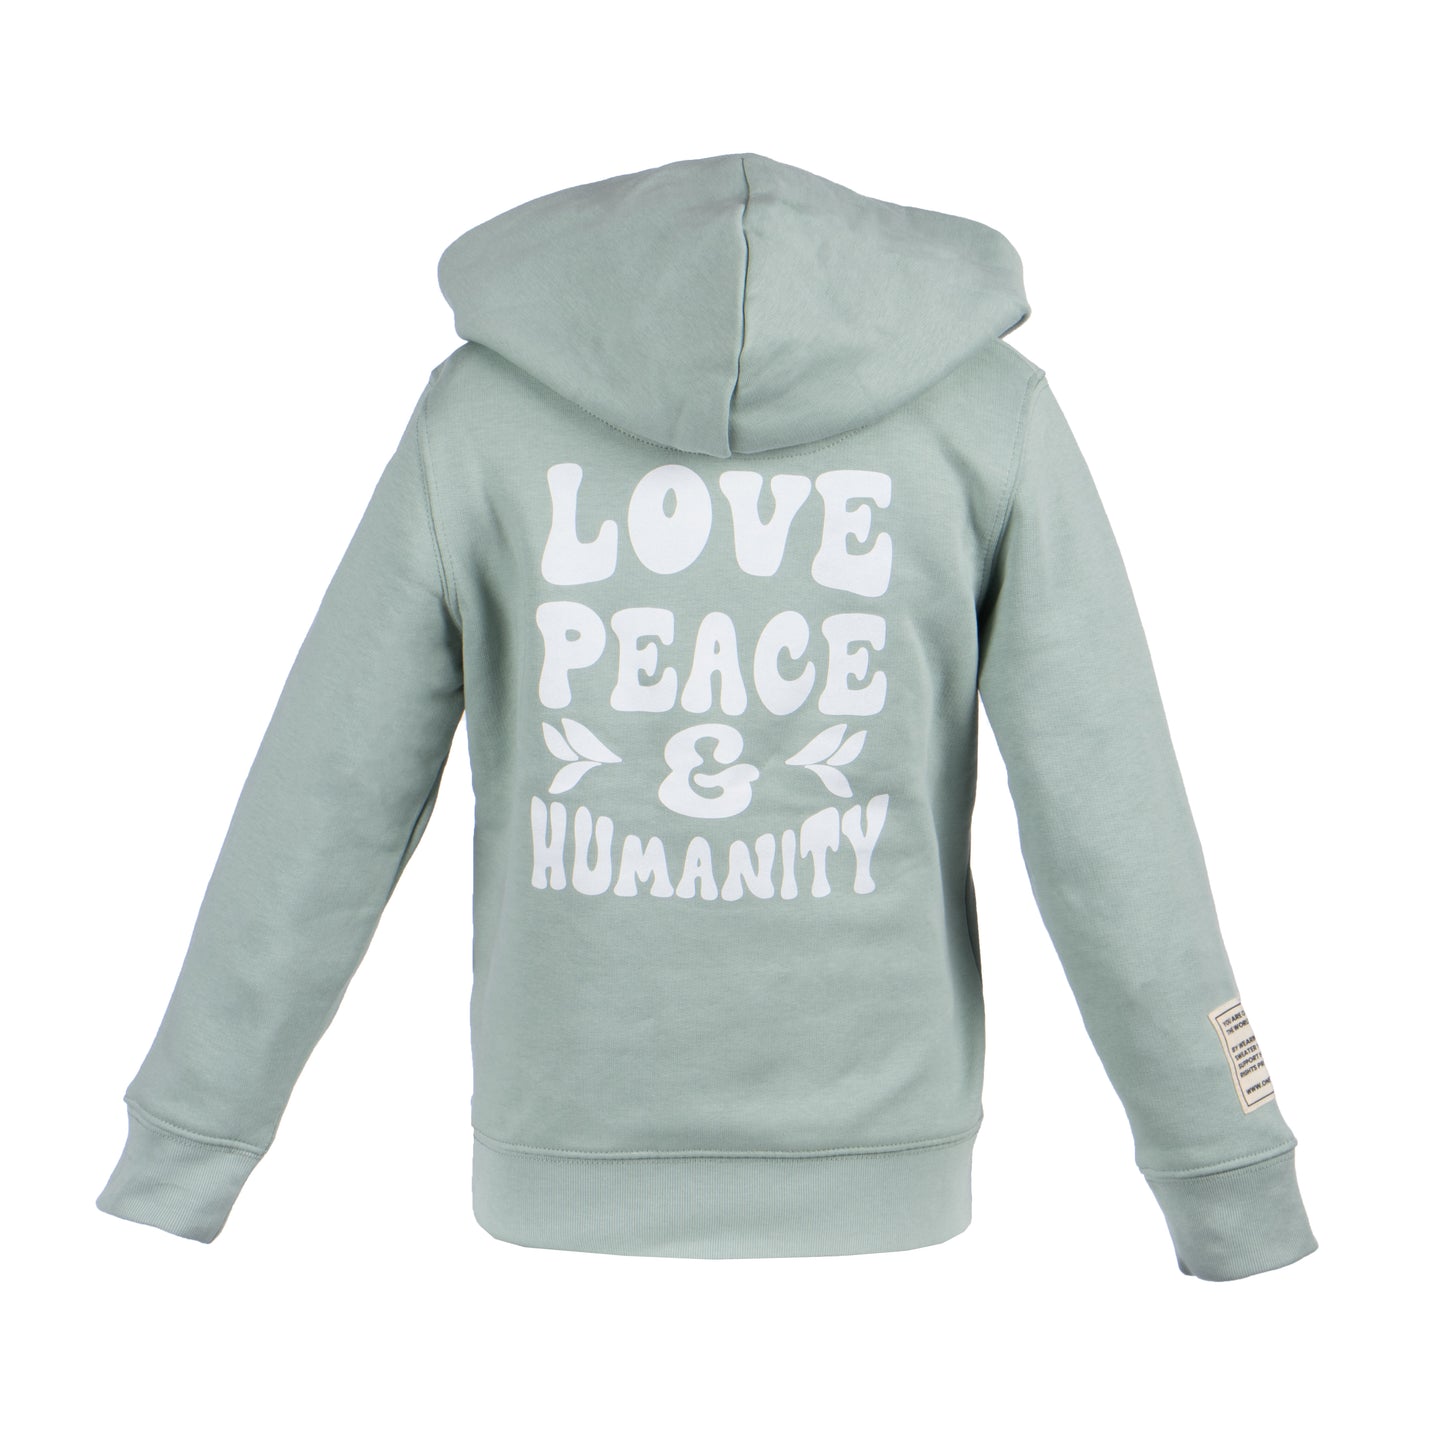 Kinder Hoodie “Love, Peace & Humanity”